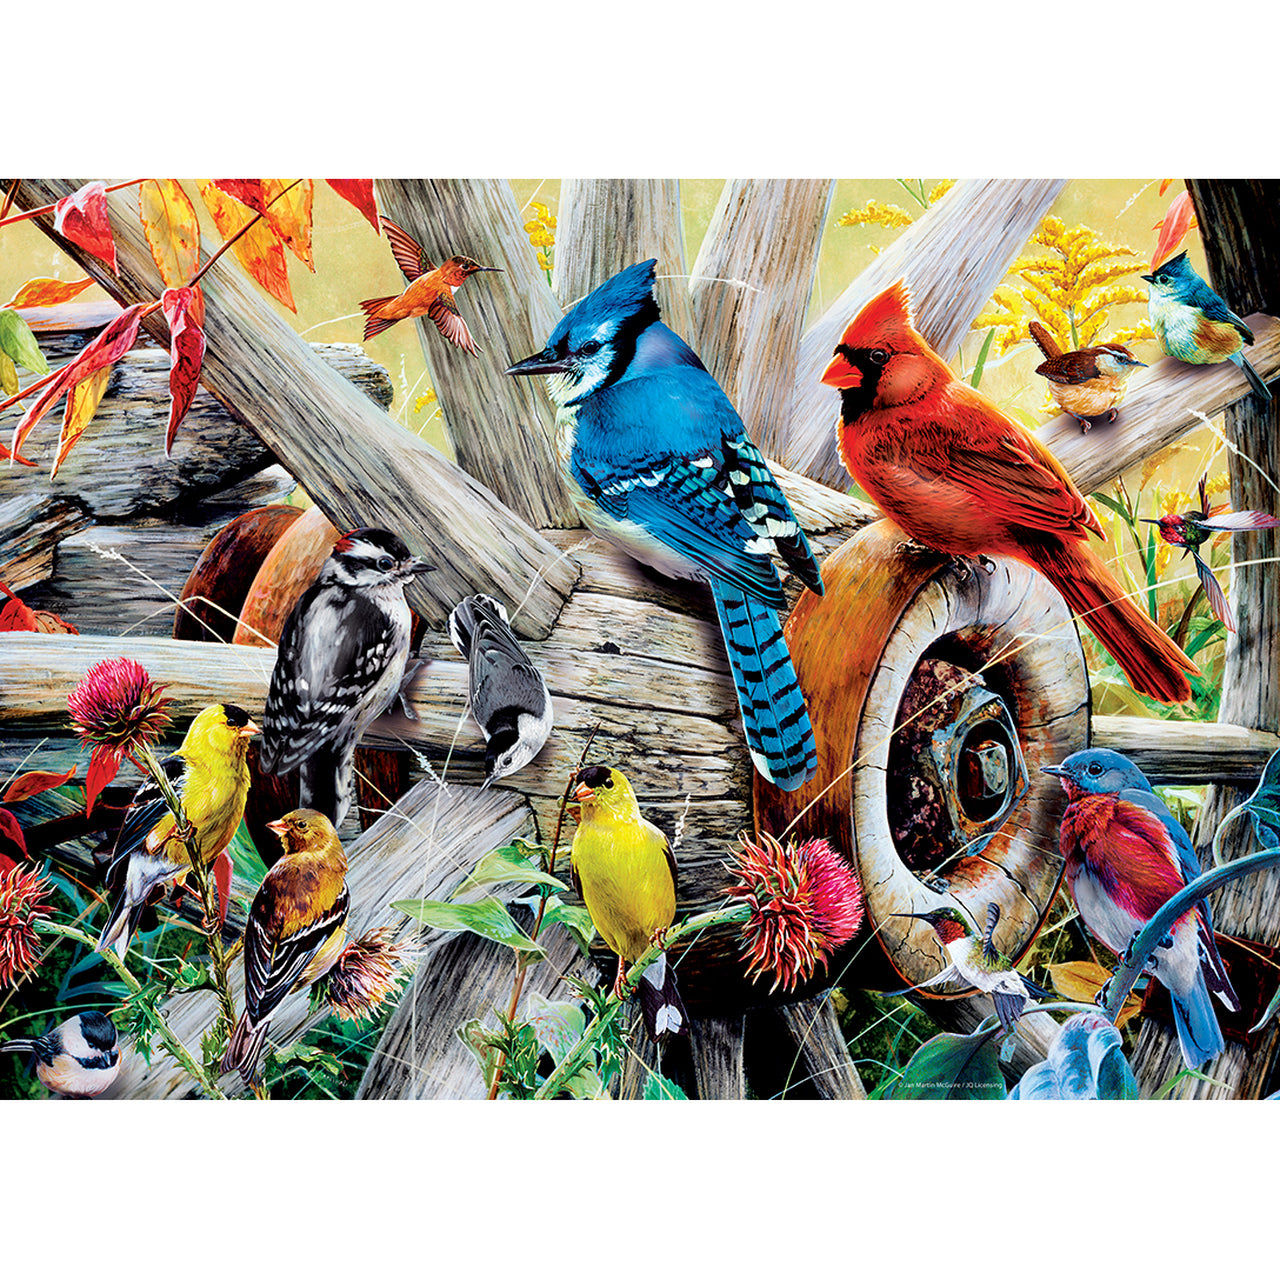 Audubon - Backyard Birds 1000 Piece Jigsaw Puzzle by MasterPieces